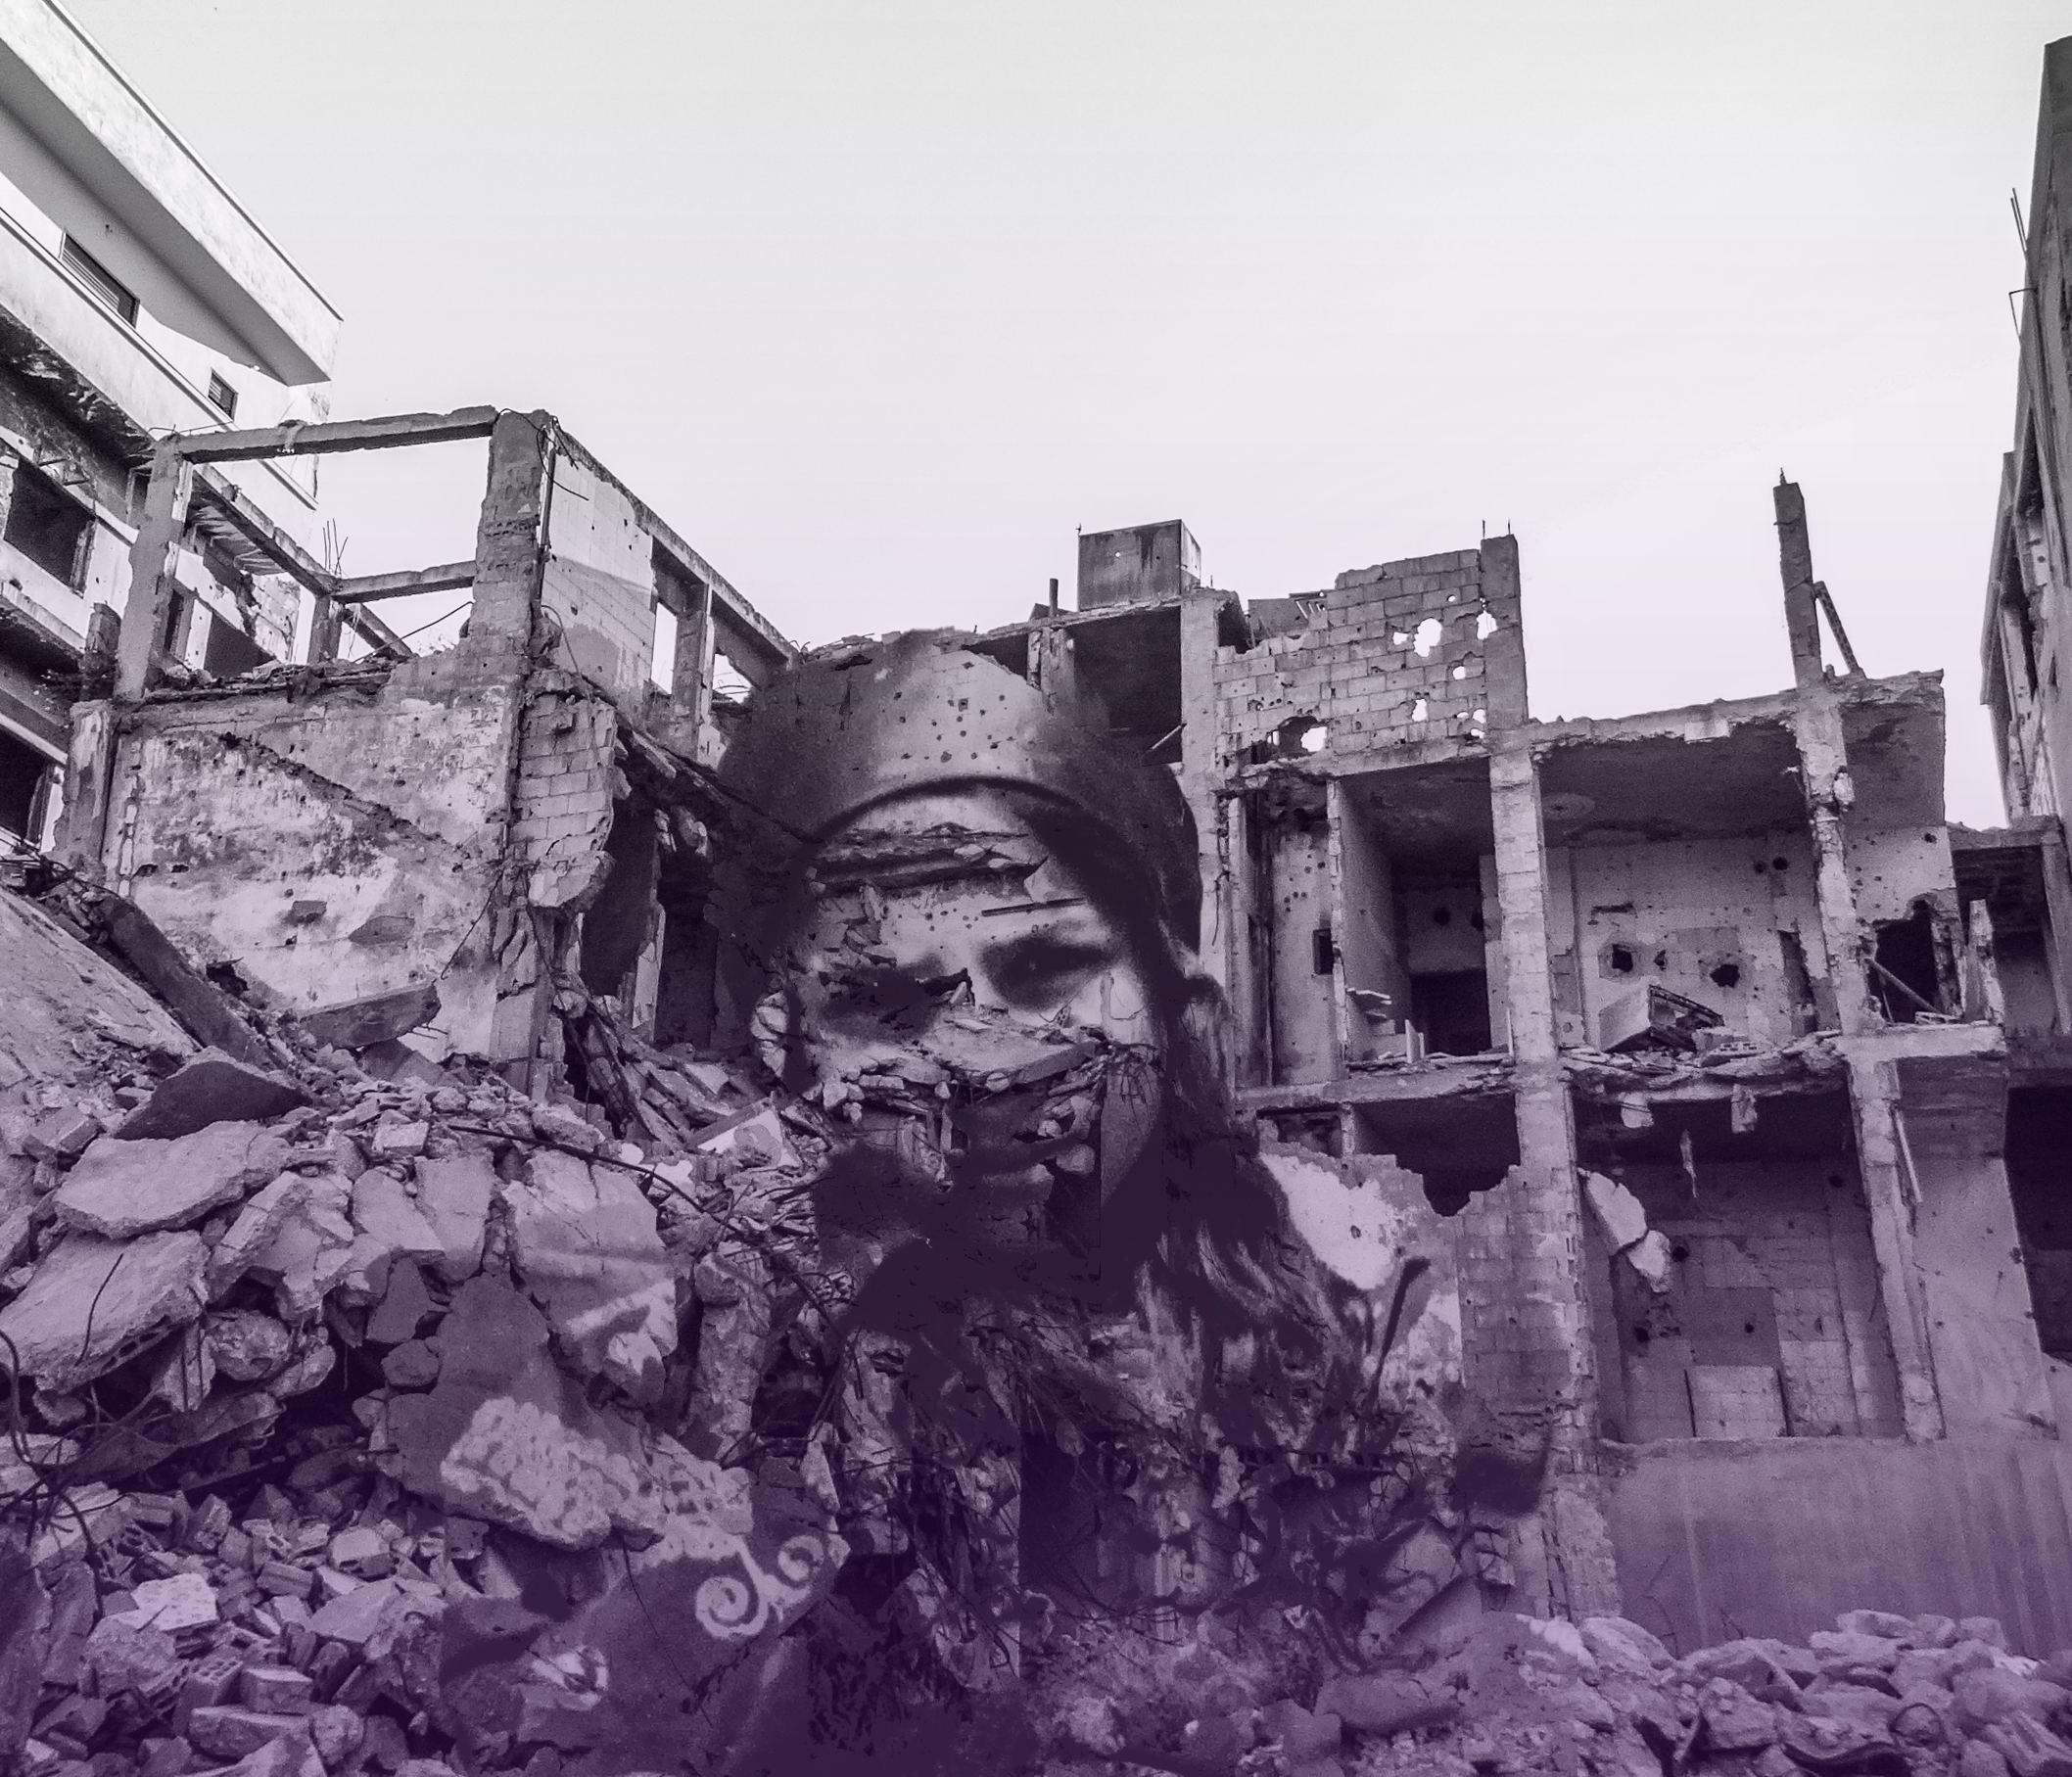 الصور الفوتوغرافيّة الخاصّة بيارا عثمان: “النّظر إلى الحرب الموجودة بداخلنا”￼